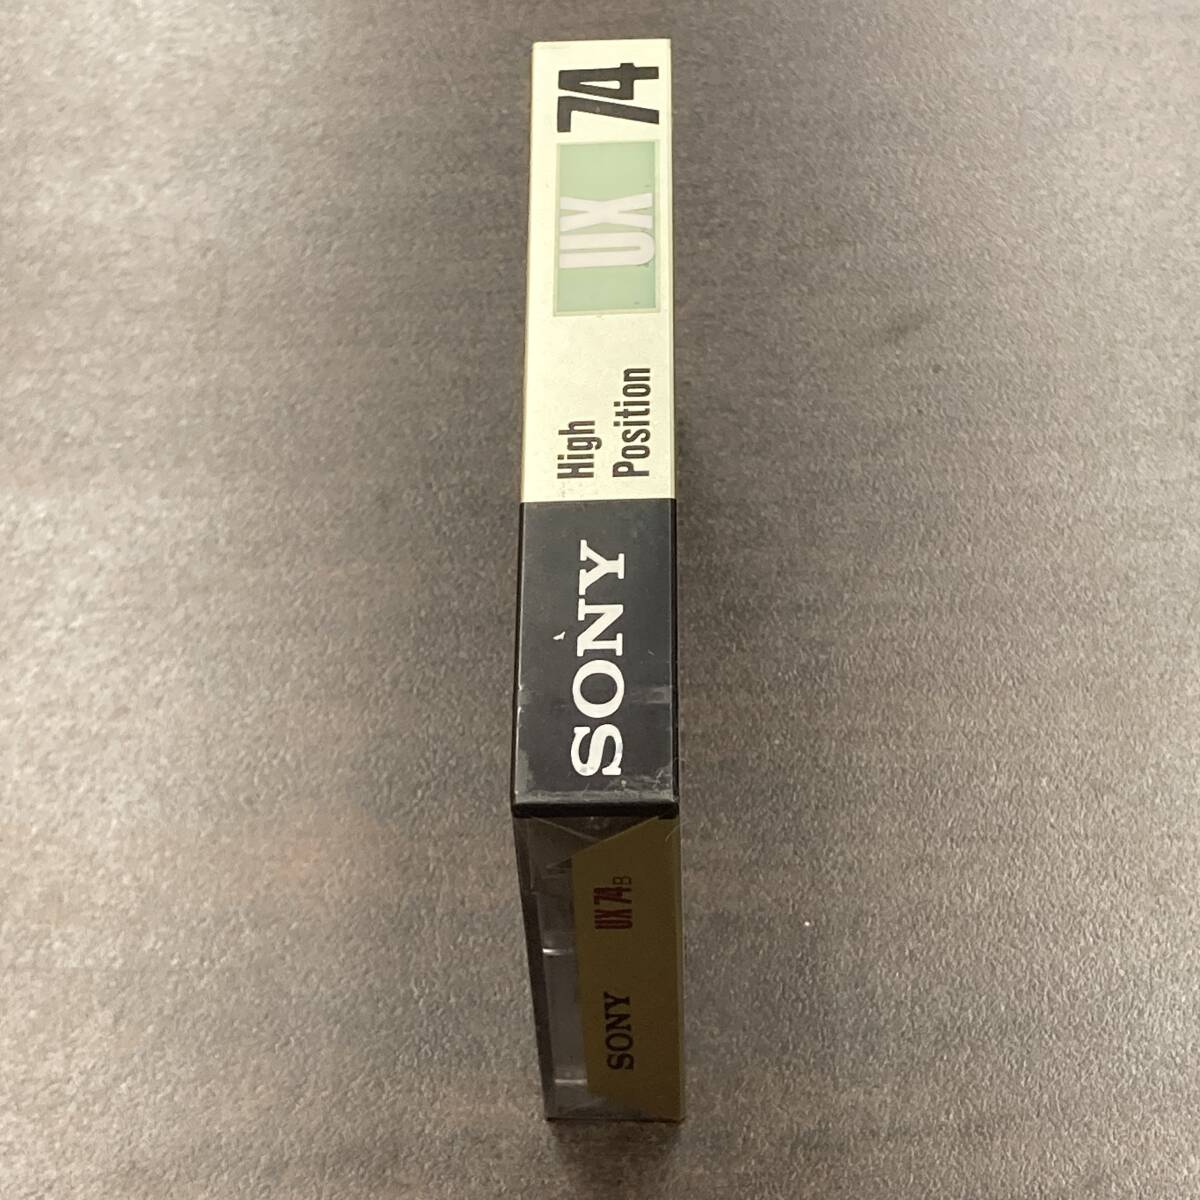 1994N unused Sony UX 74 minute Hi Posi 1 pcs cassette tape /One SONY Type II High Position unused Audio Cassette